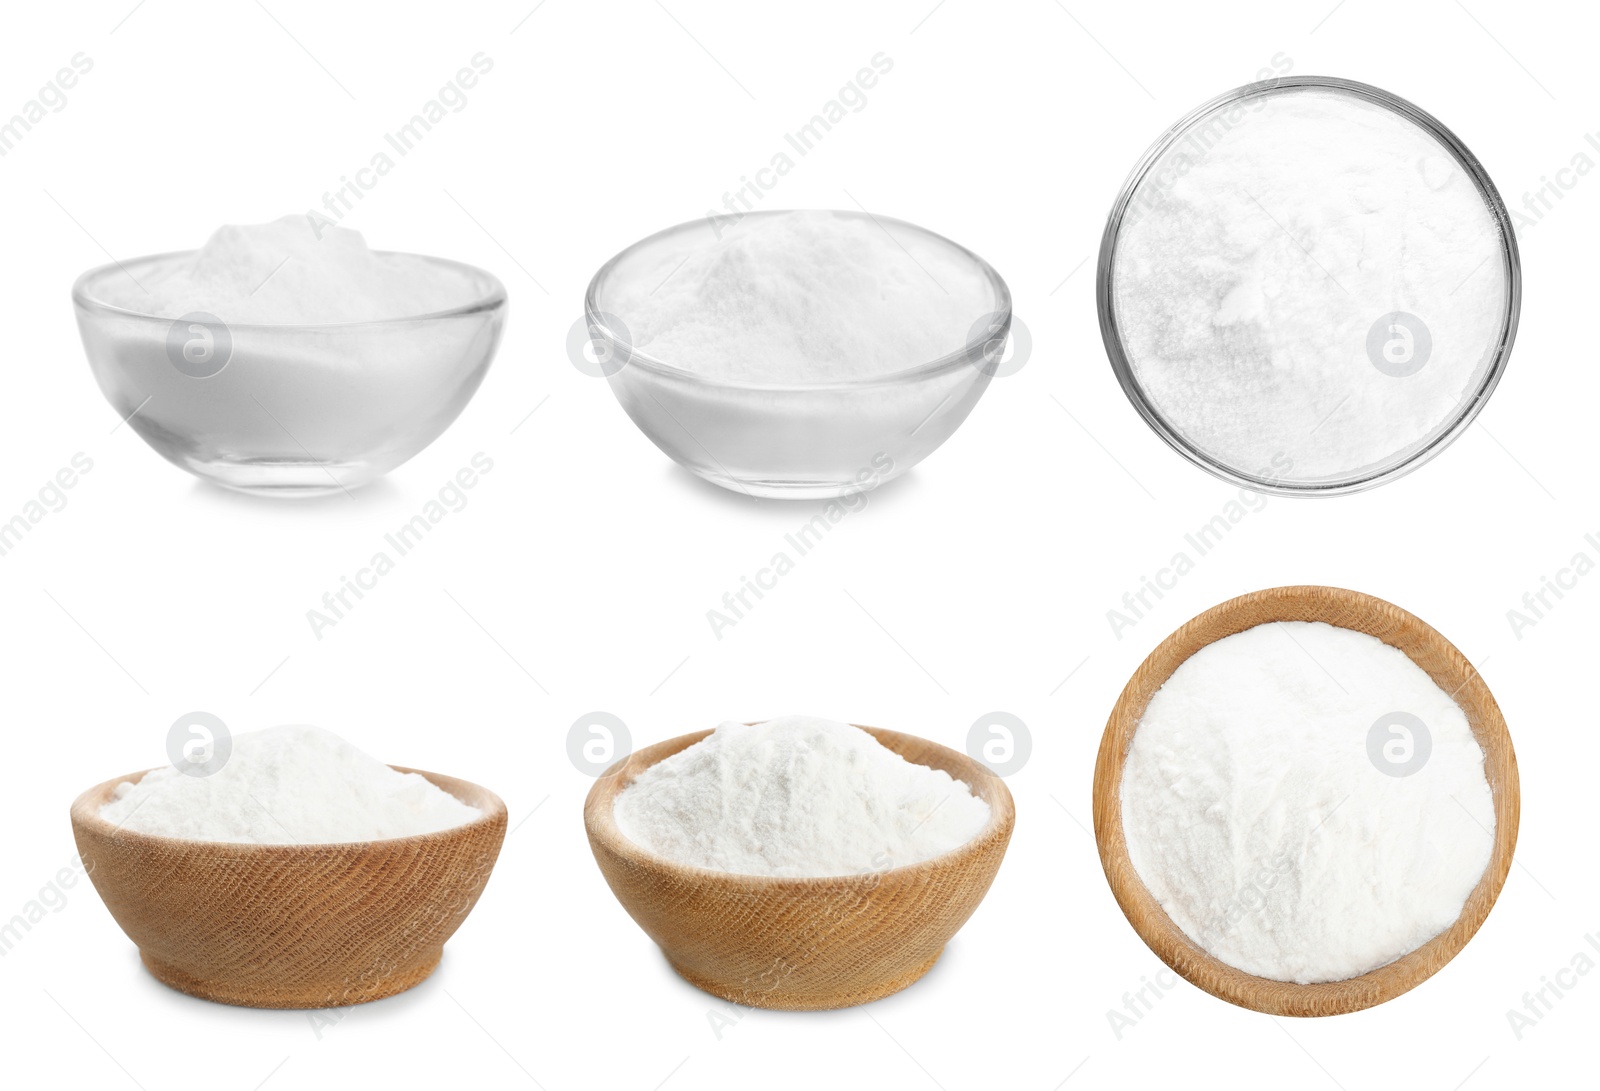 Image of Set with bowls of baking soda on white background